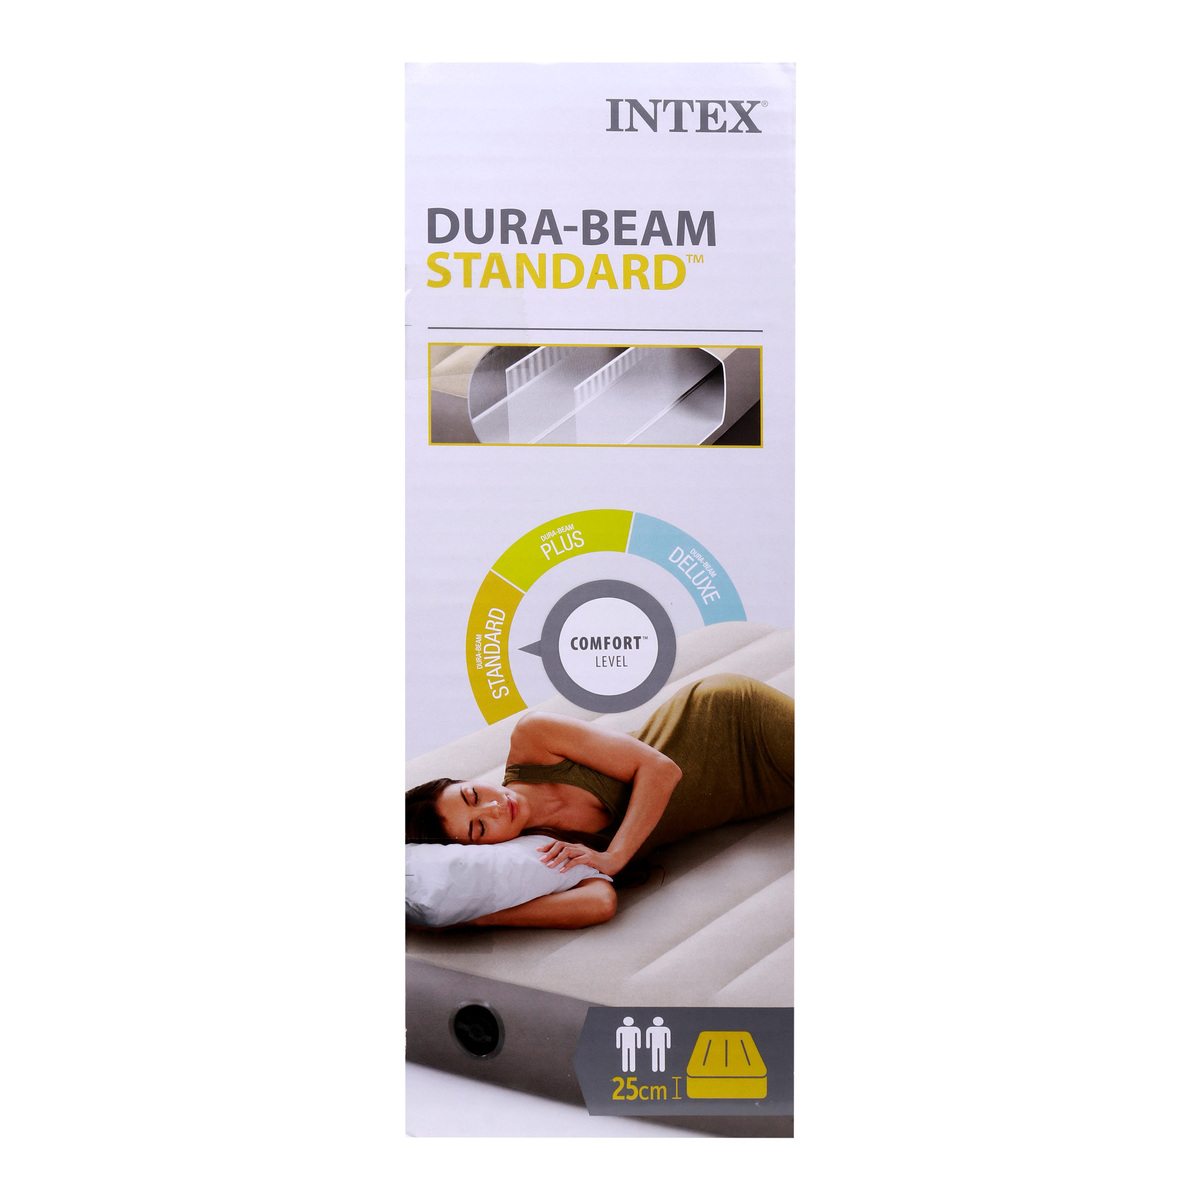 Intex Dura-Beam Standard Single-High Air Mattress 203x152x25cm 64103